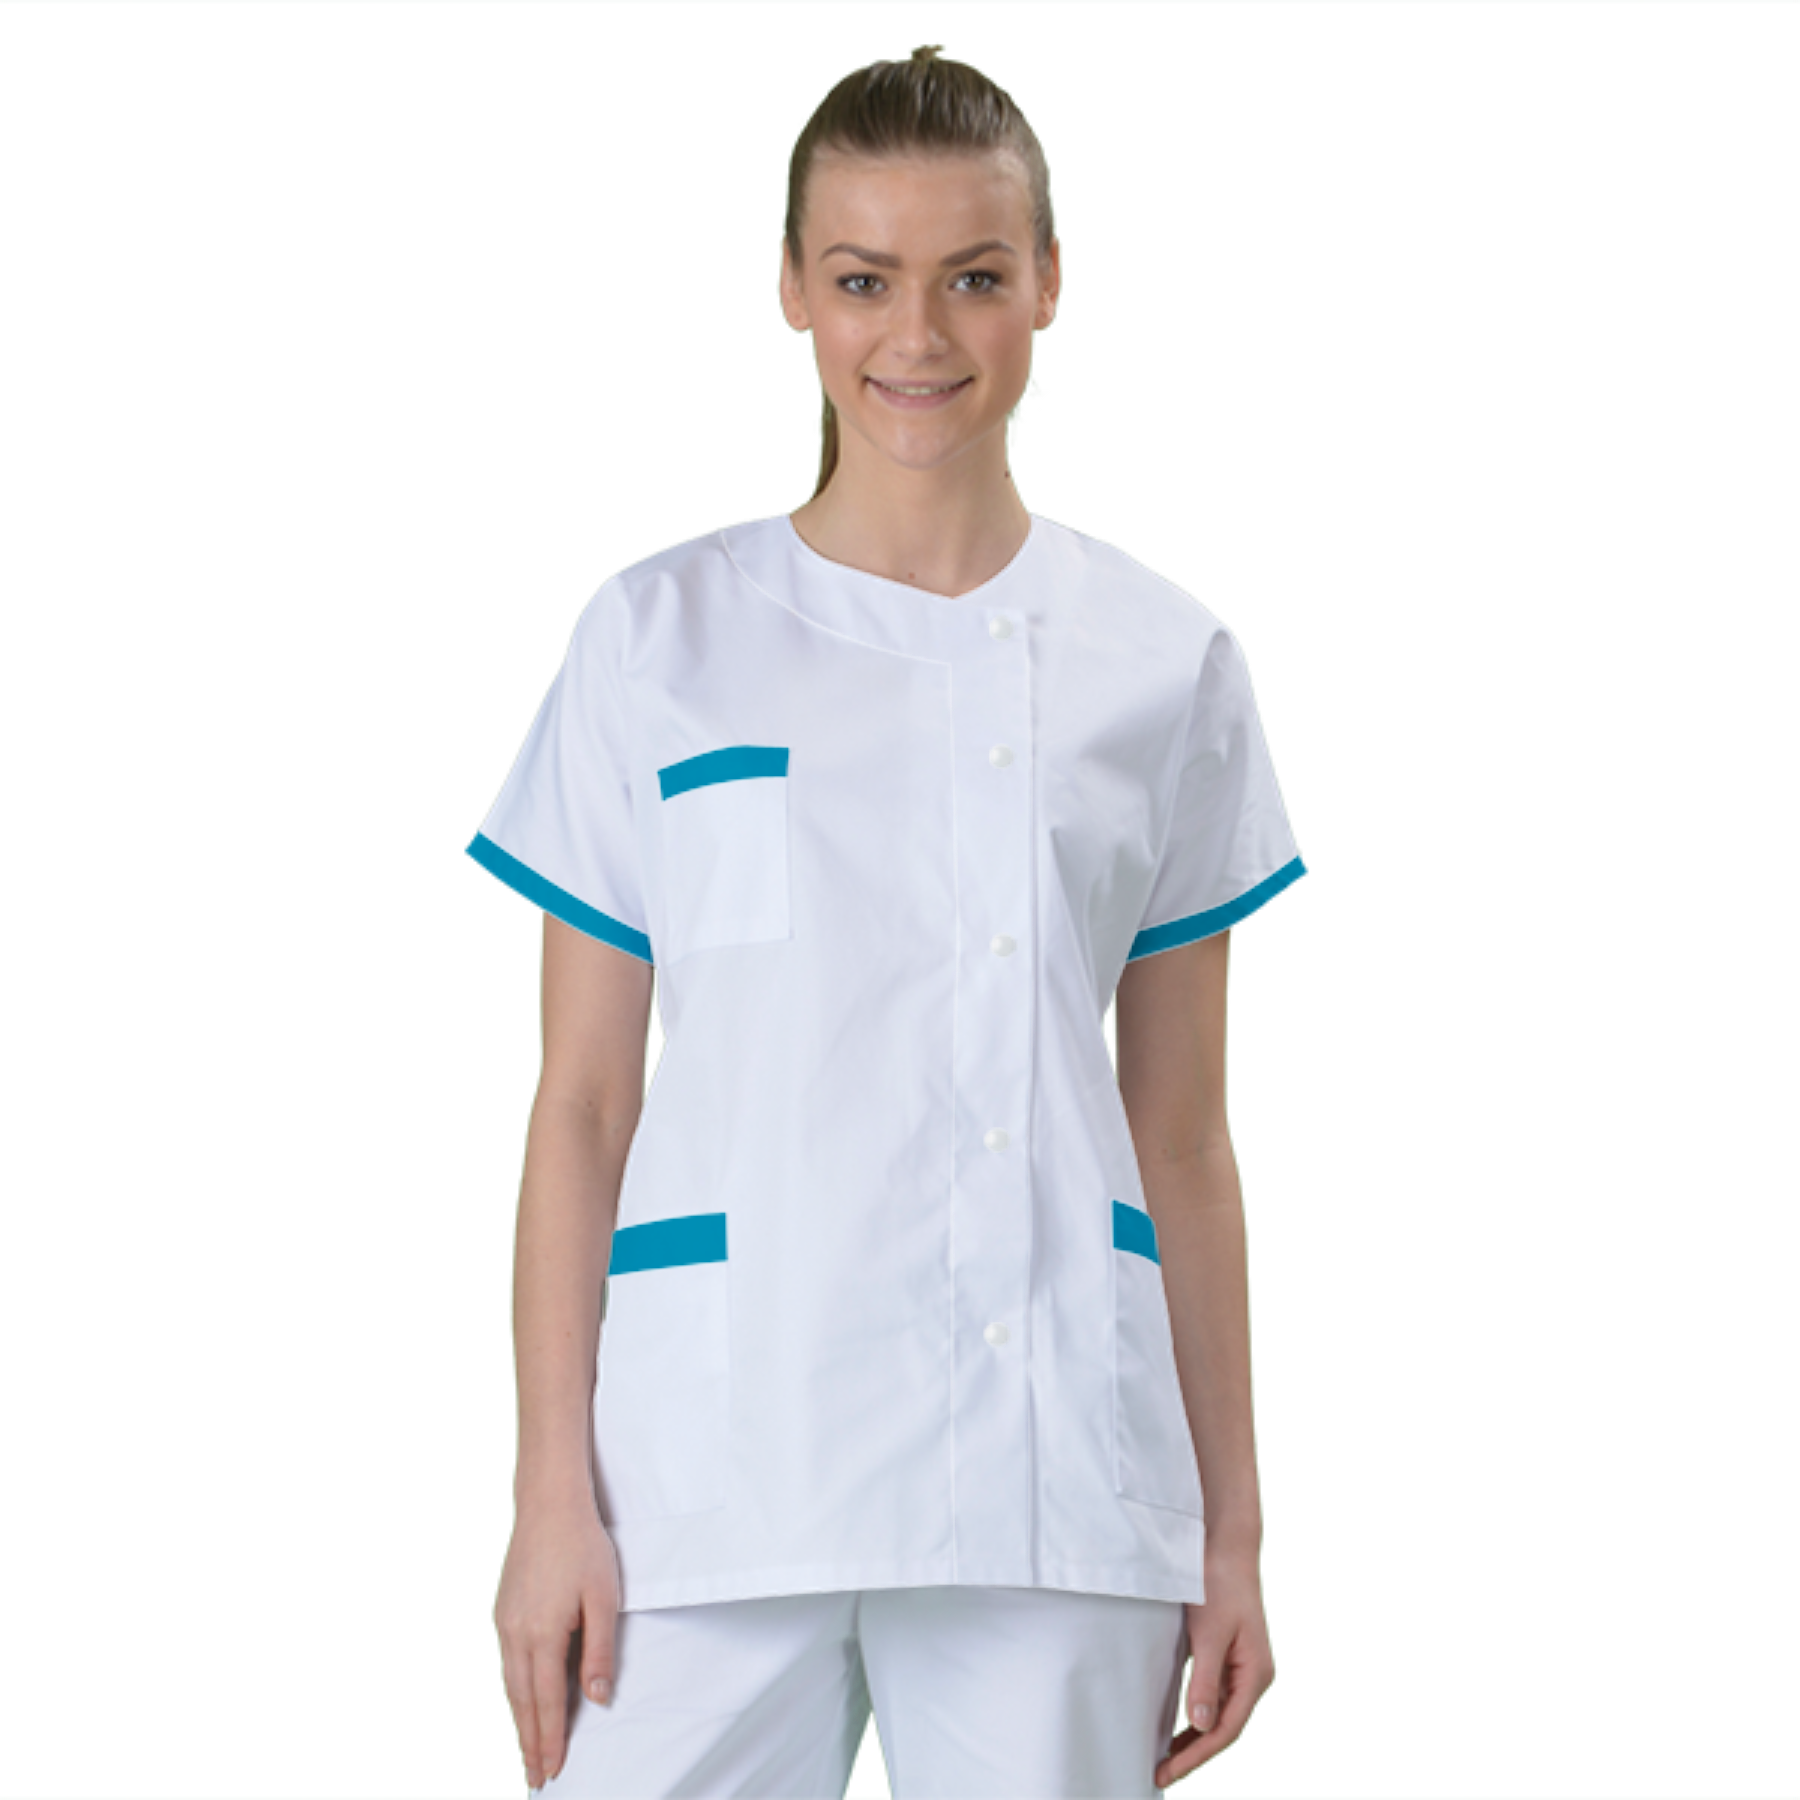 blouse-de-travail-personnalisee-tunique-medicale acheté - par Elodie - le 04-05-2020